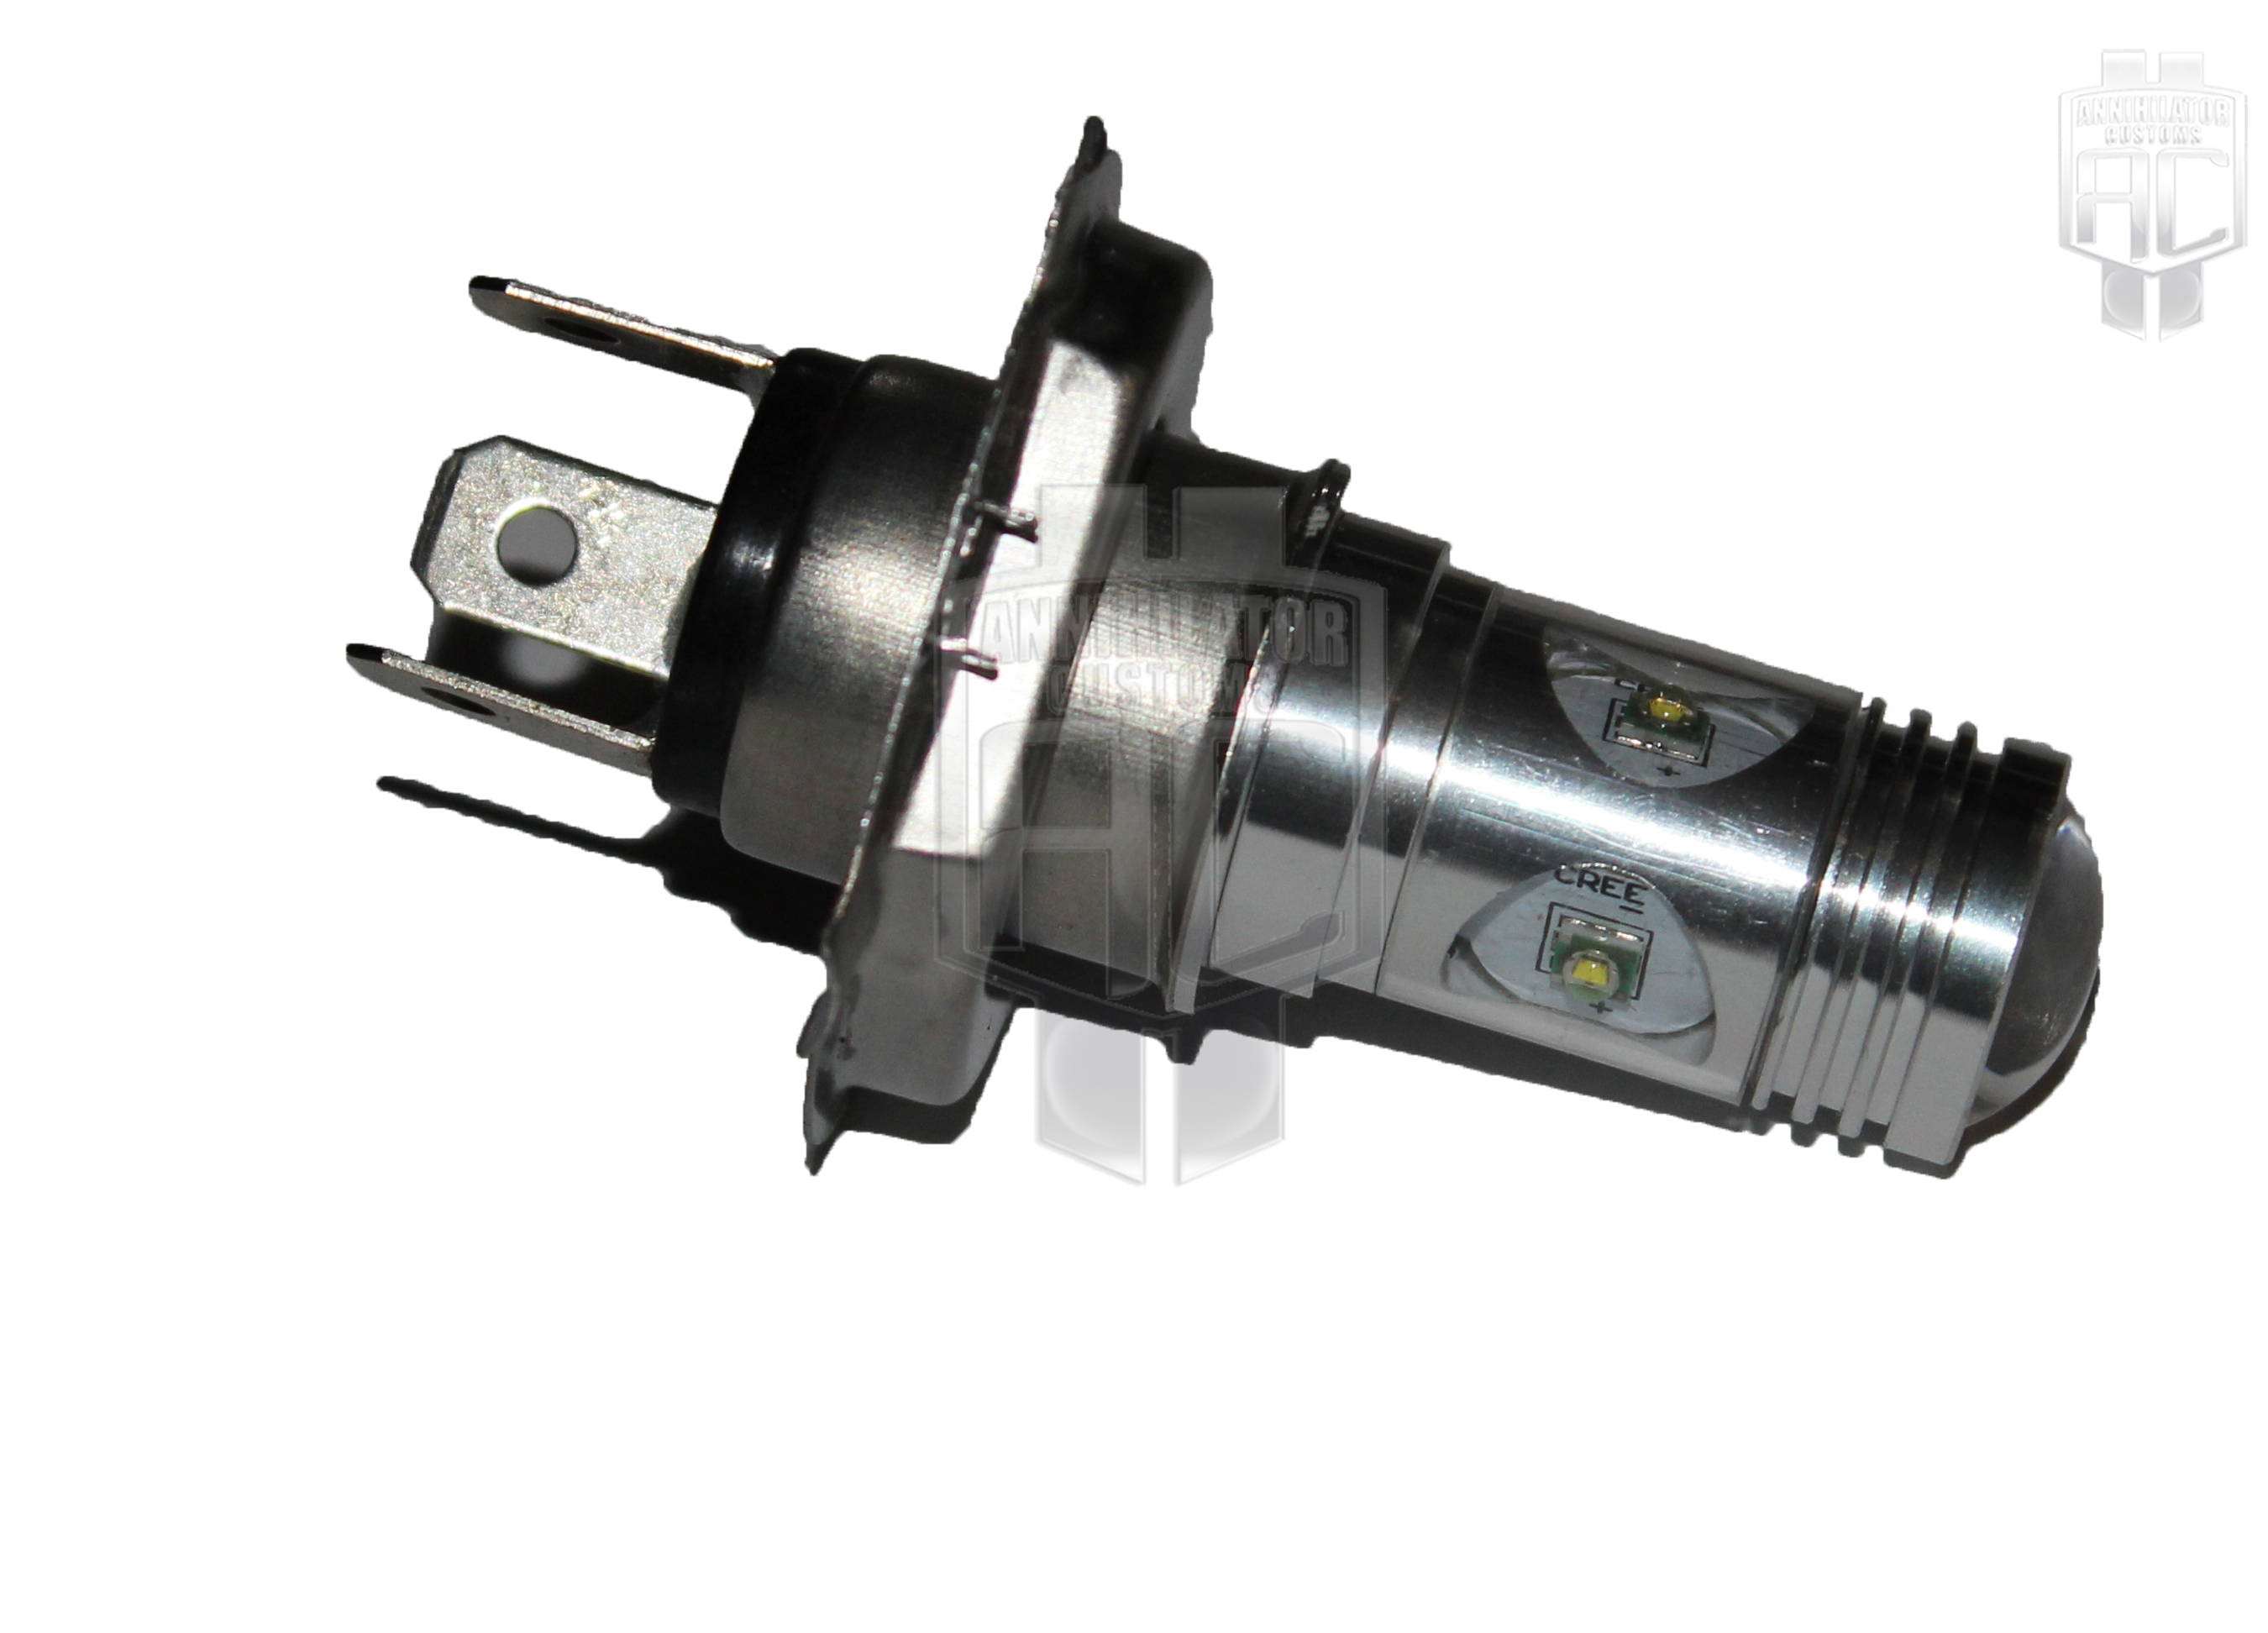 H4 5pc CREE LED Light Bulbs in Lens